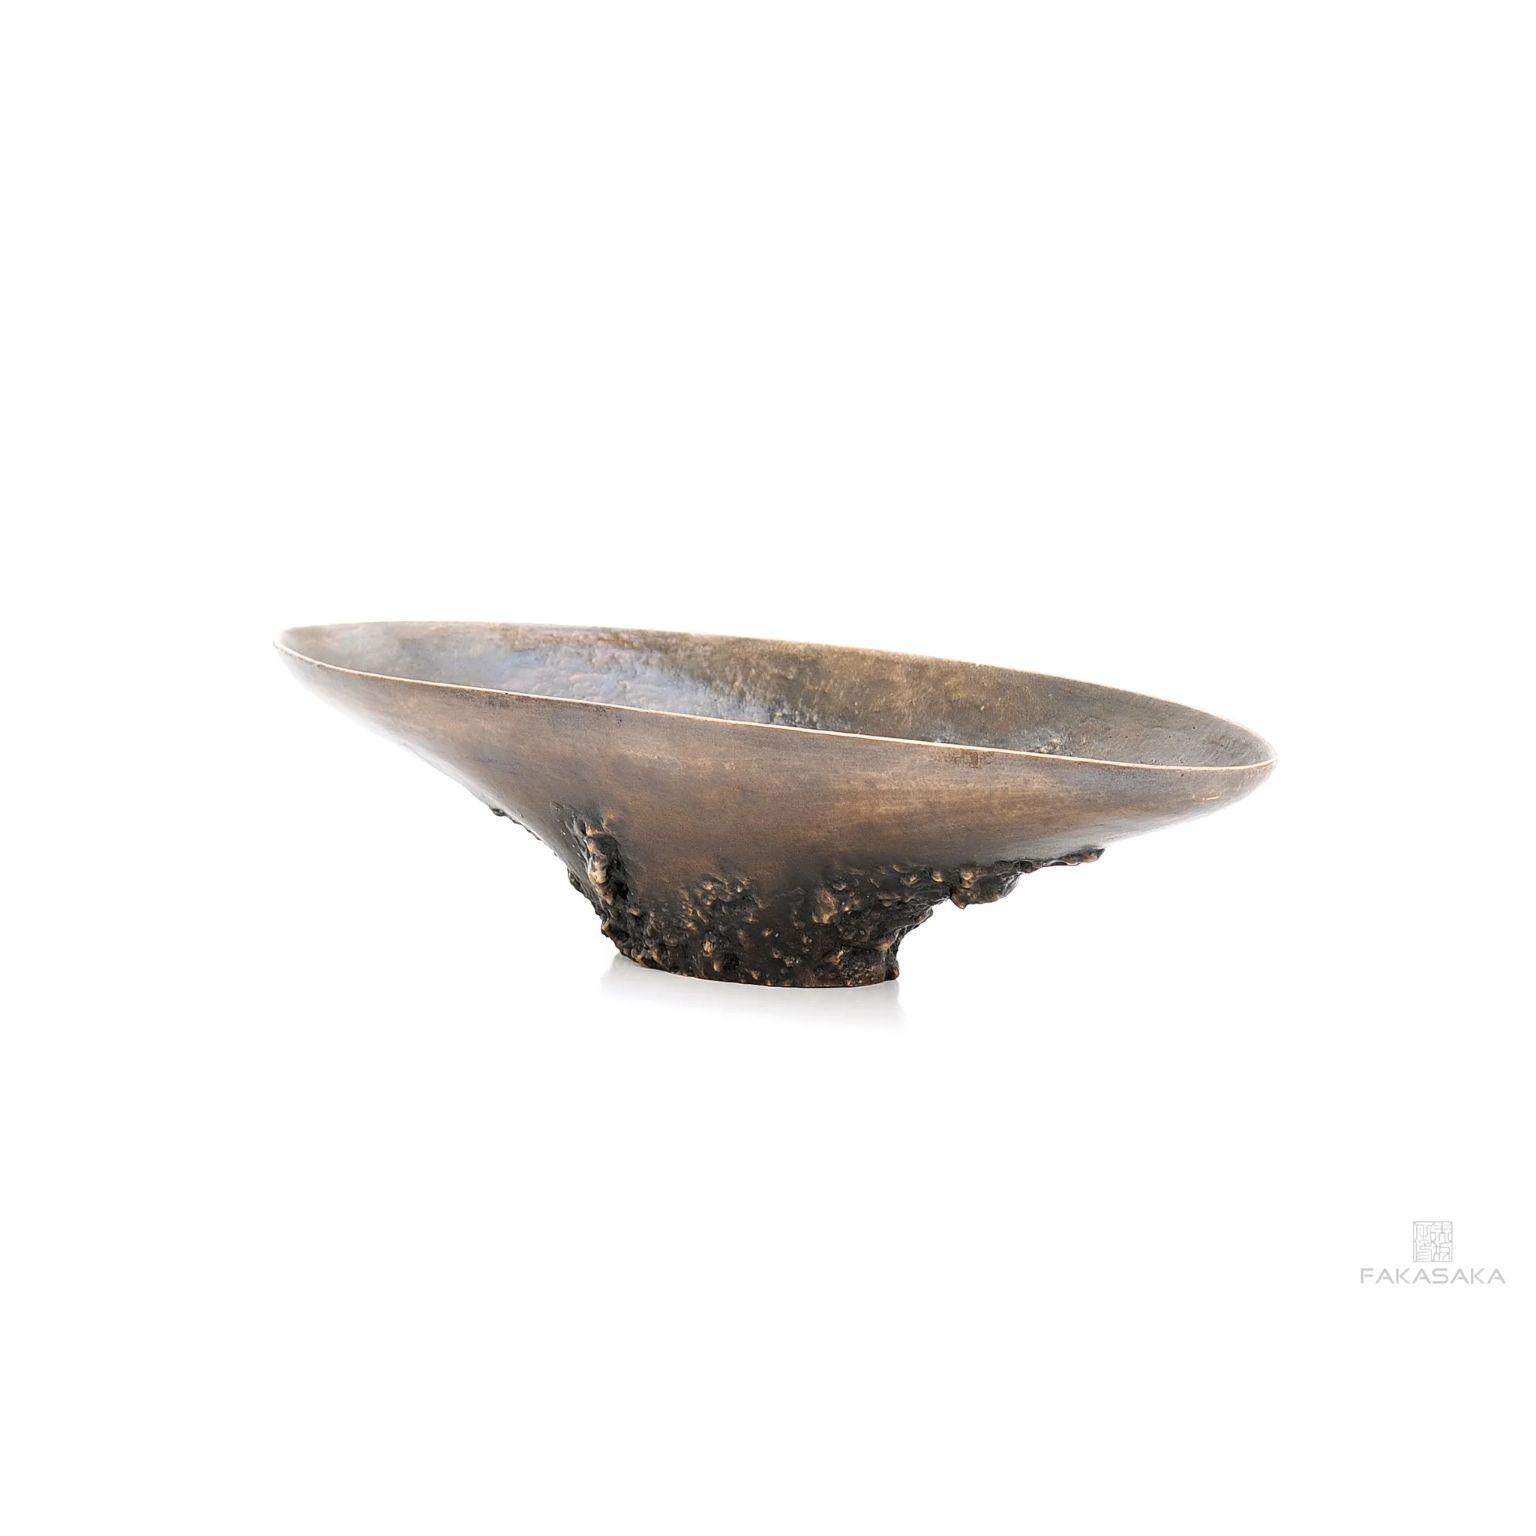 Brazilian O'Connor Bowl by Fakasaka Design For Sale